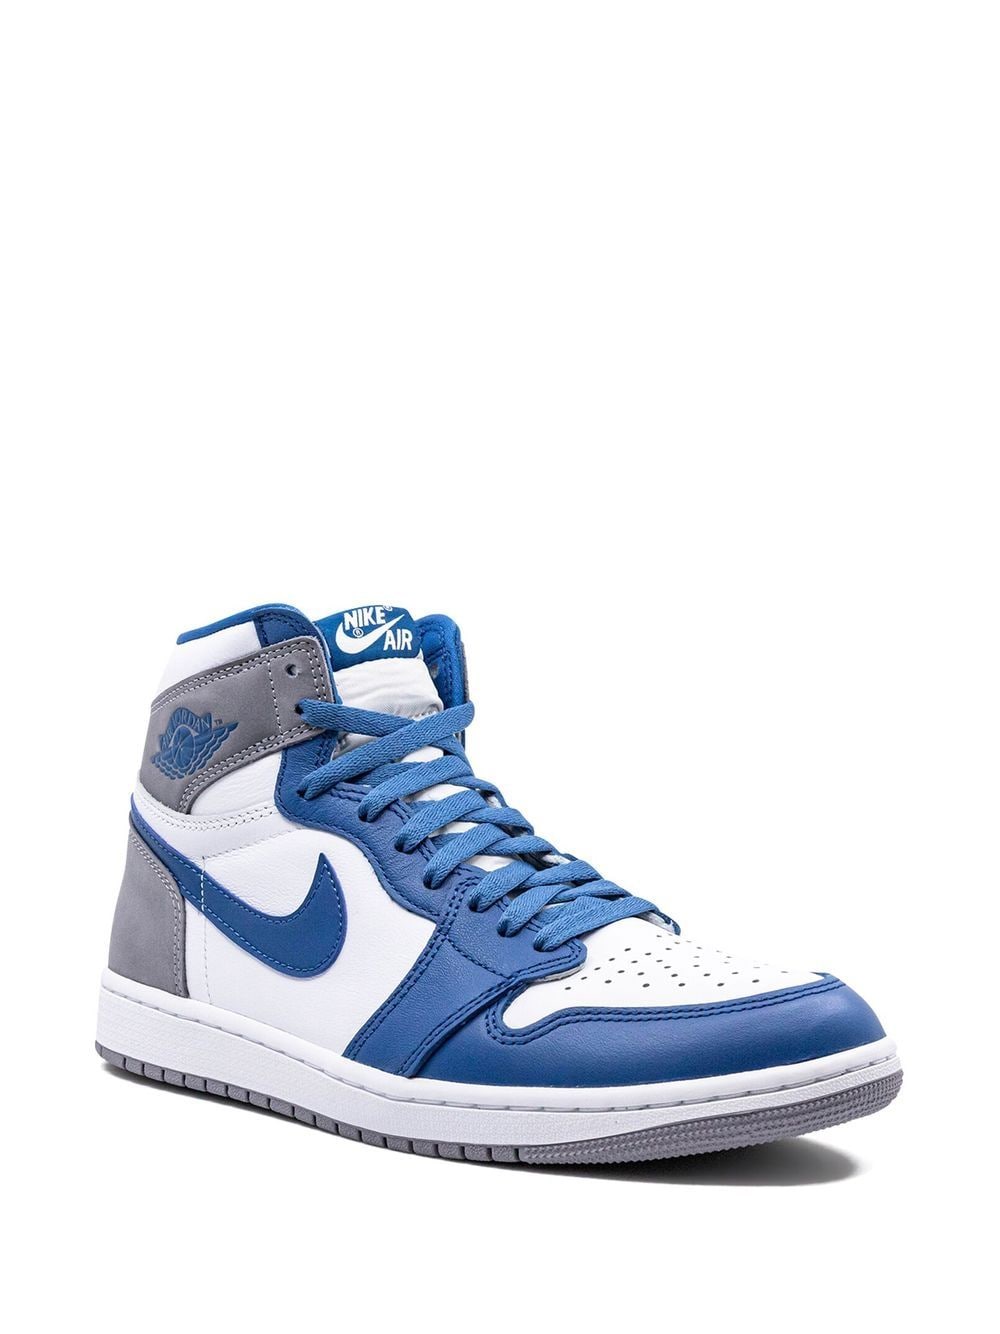 Image 2 of Jordan Air Jordan 1 High OG "True Blue" sneakers